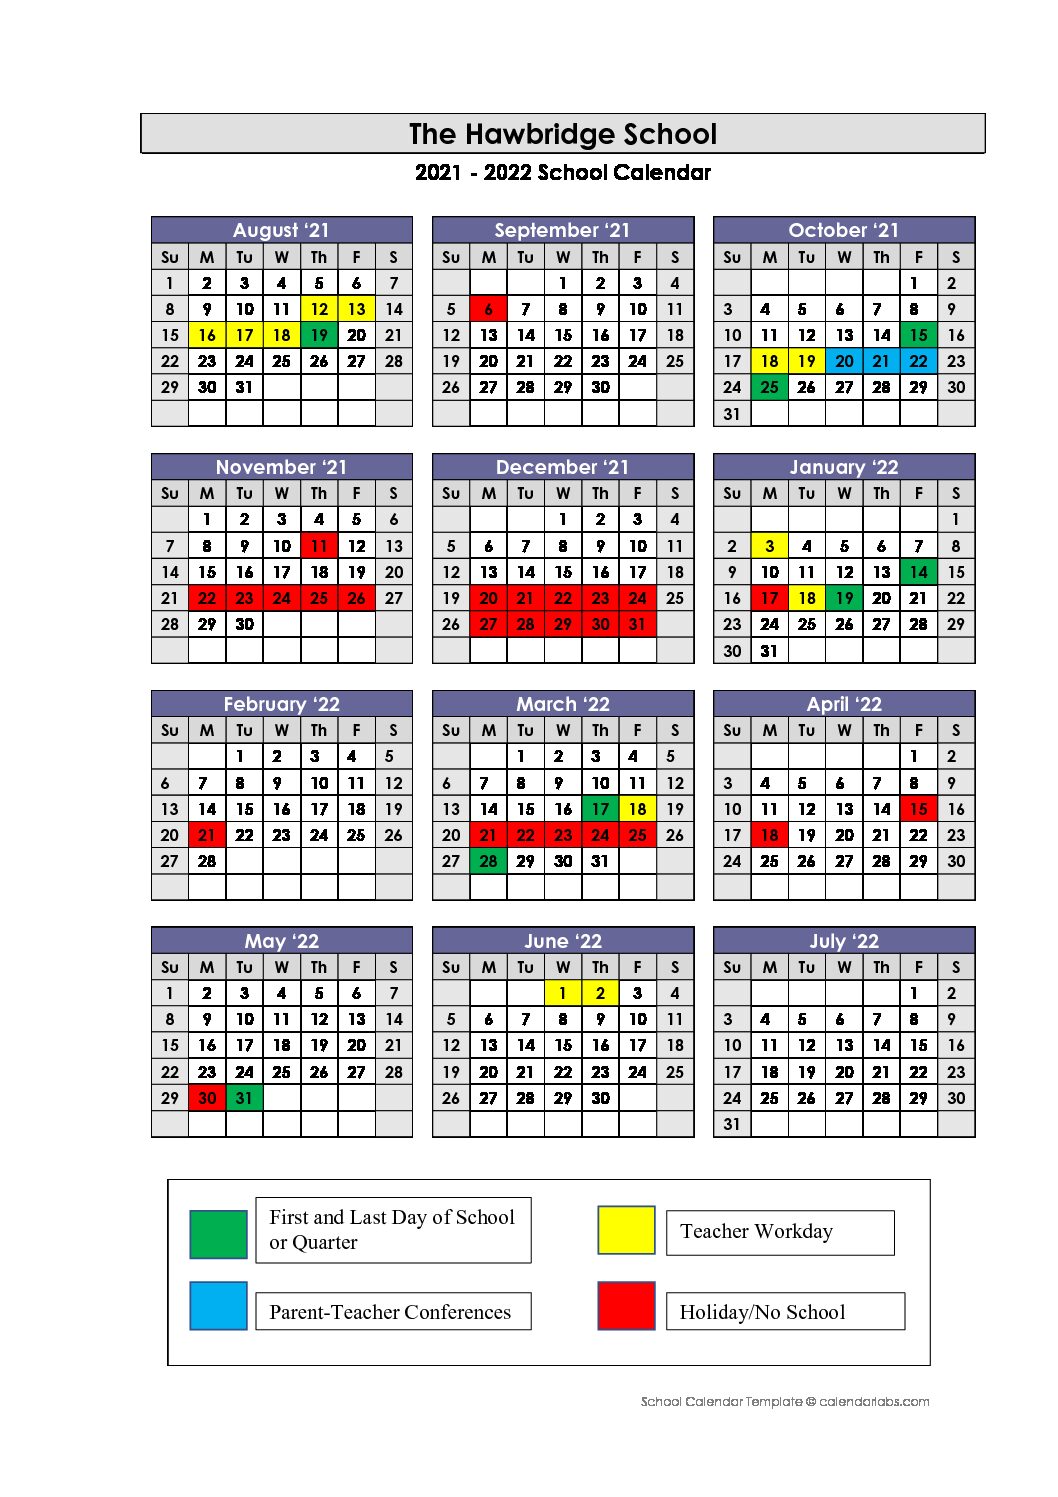 unc-spring-2022-calendar-customize-and-print